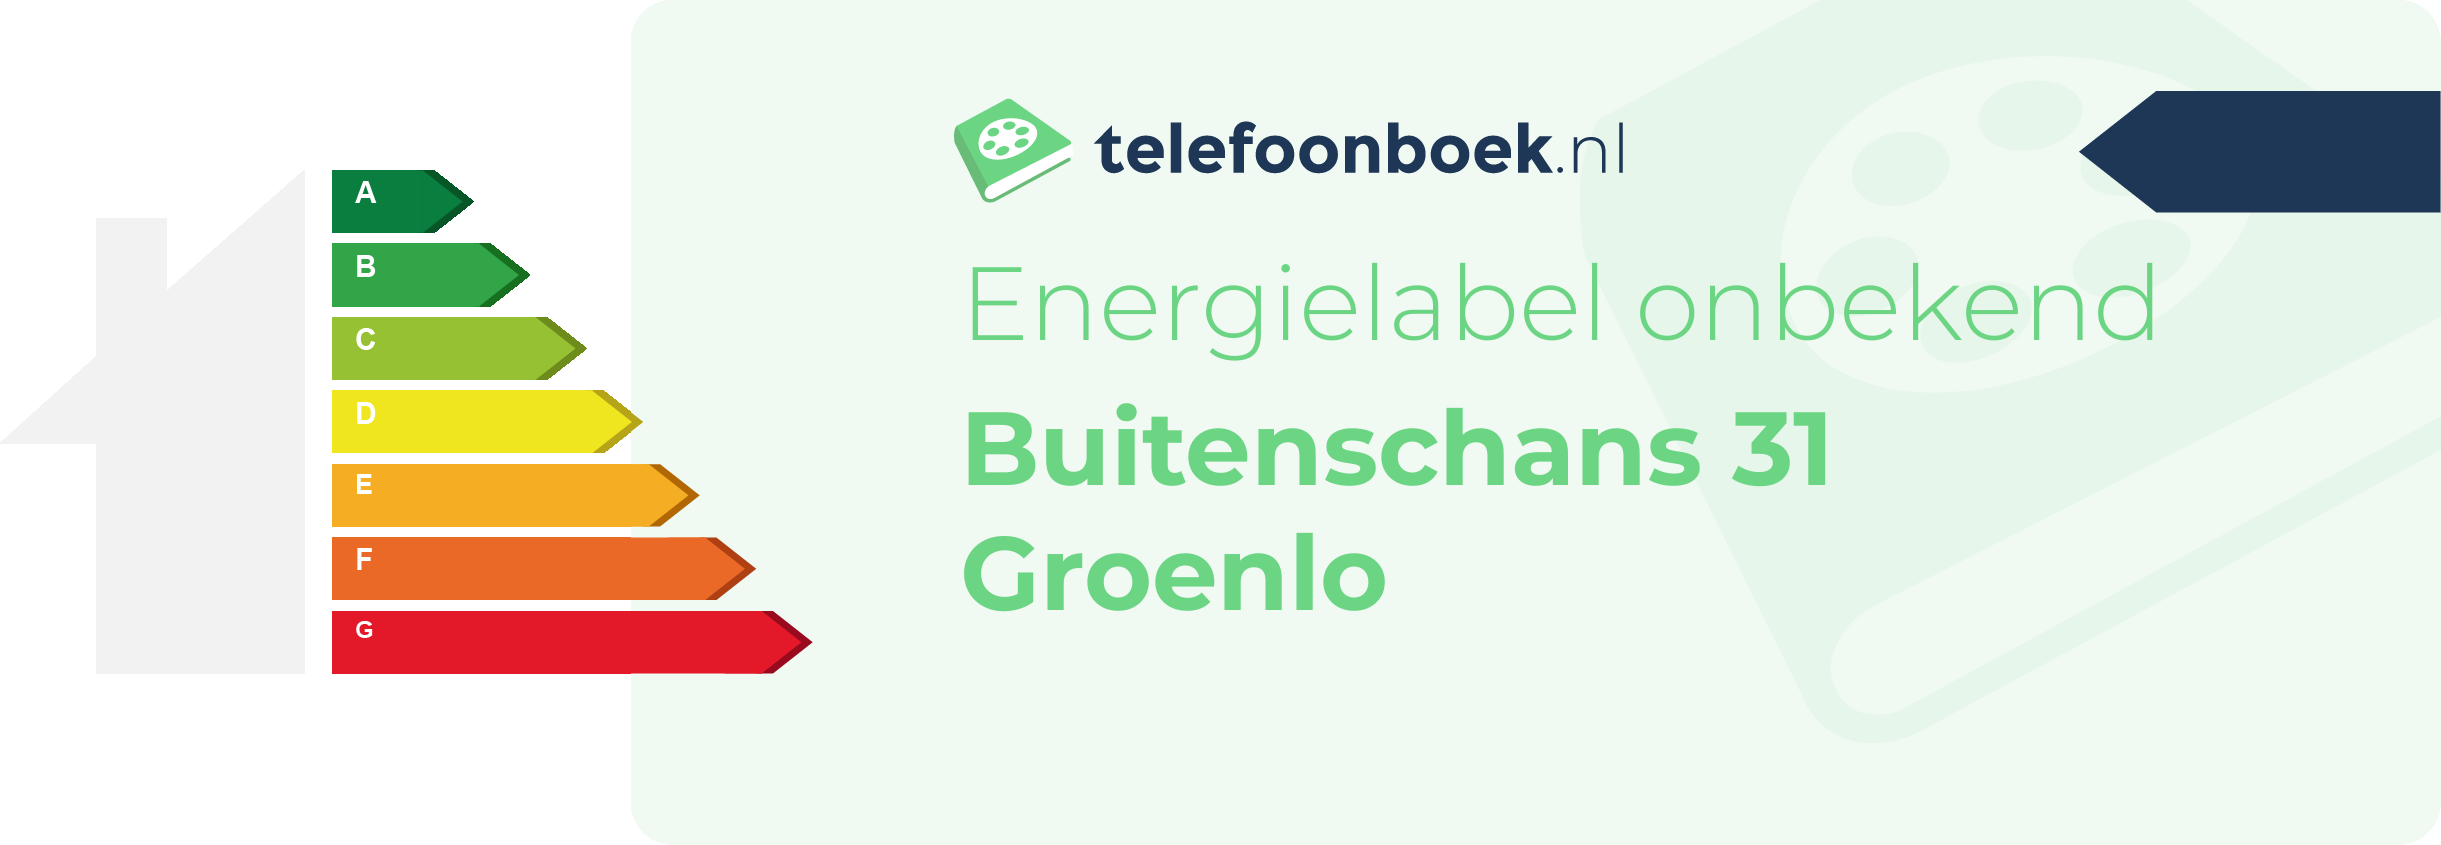 Energielabel Buitenschans 31 Groenlo